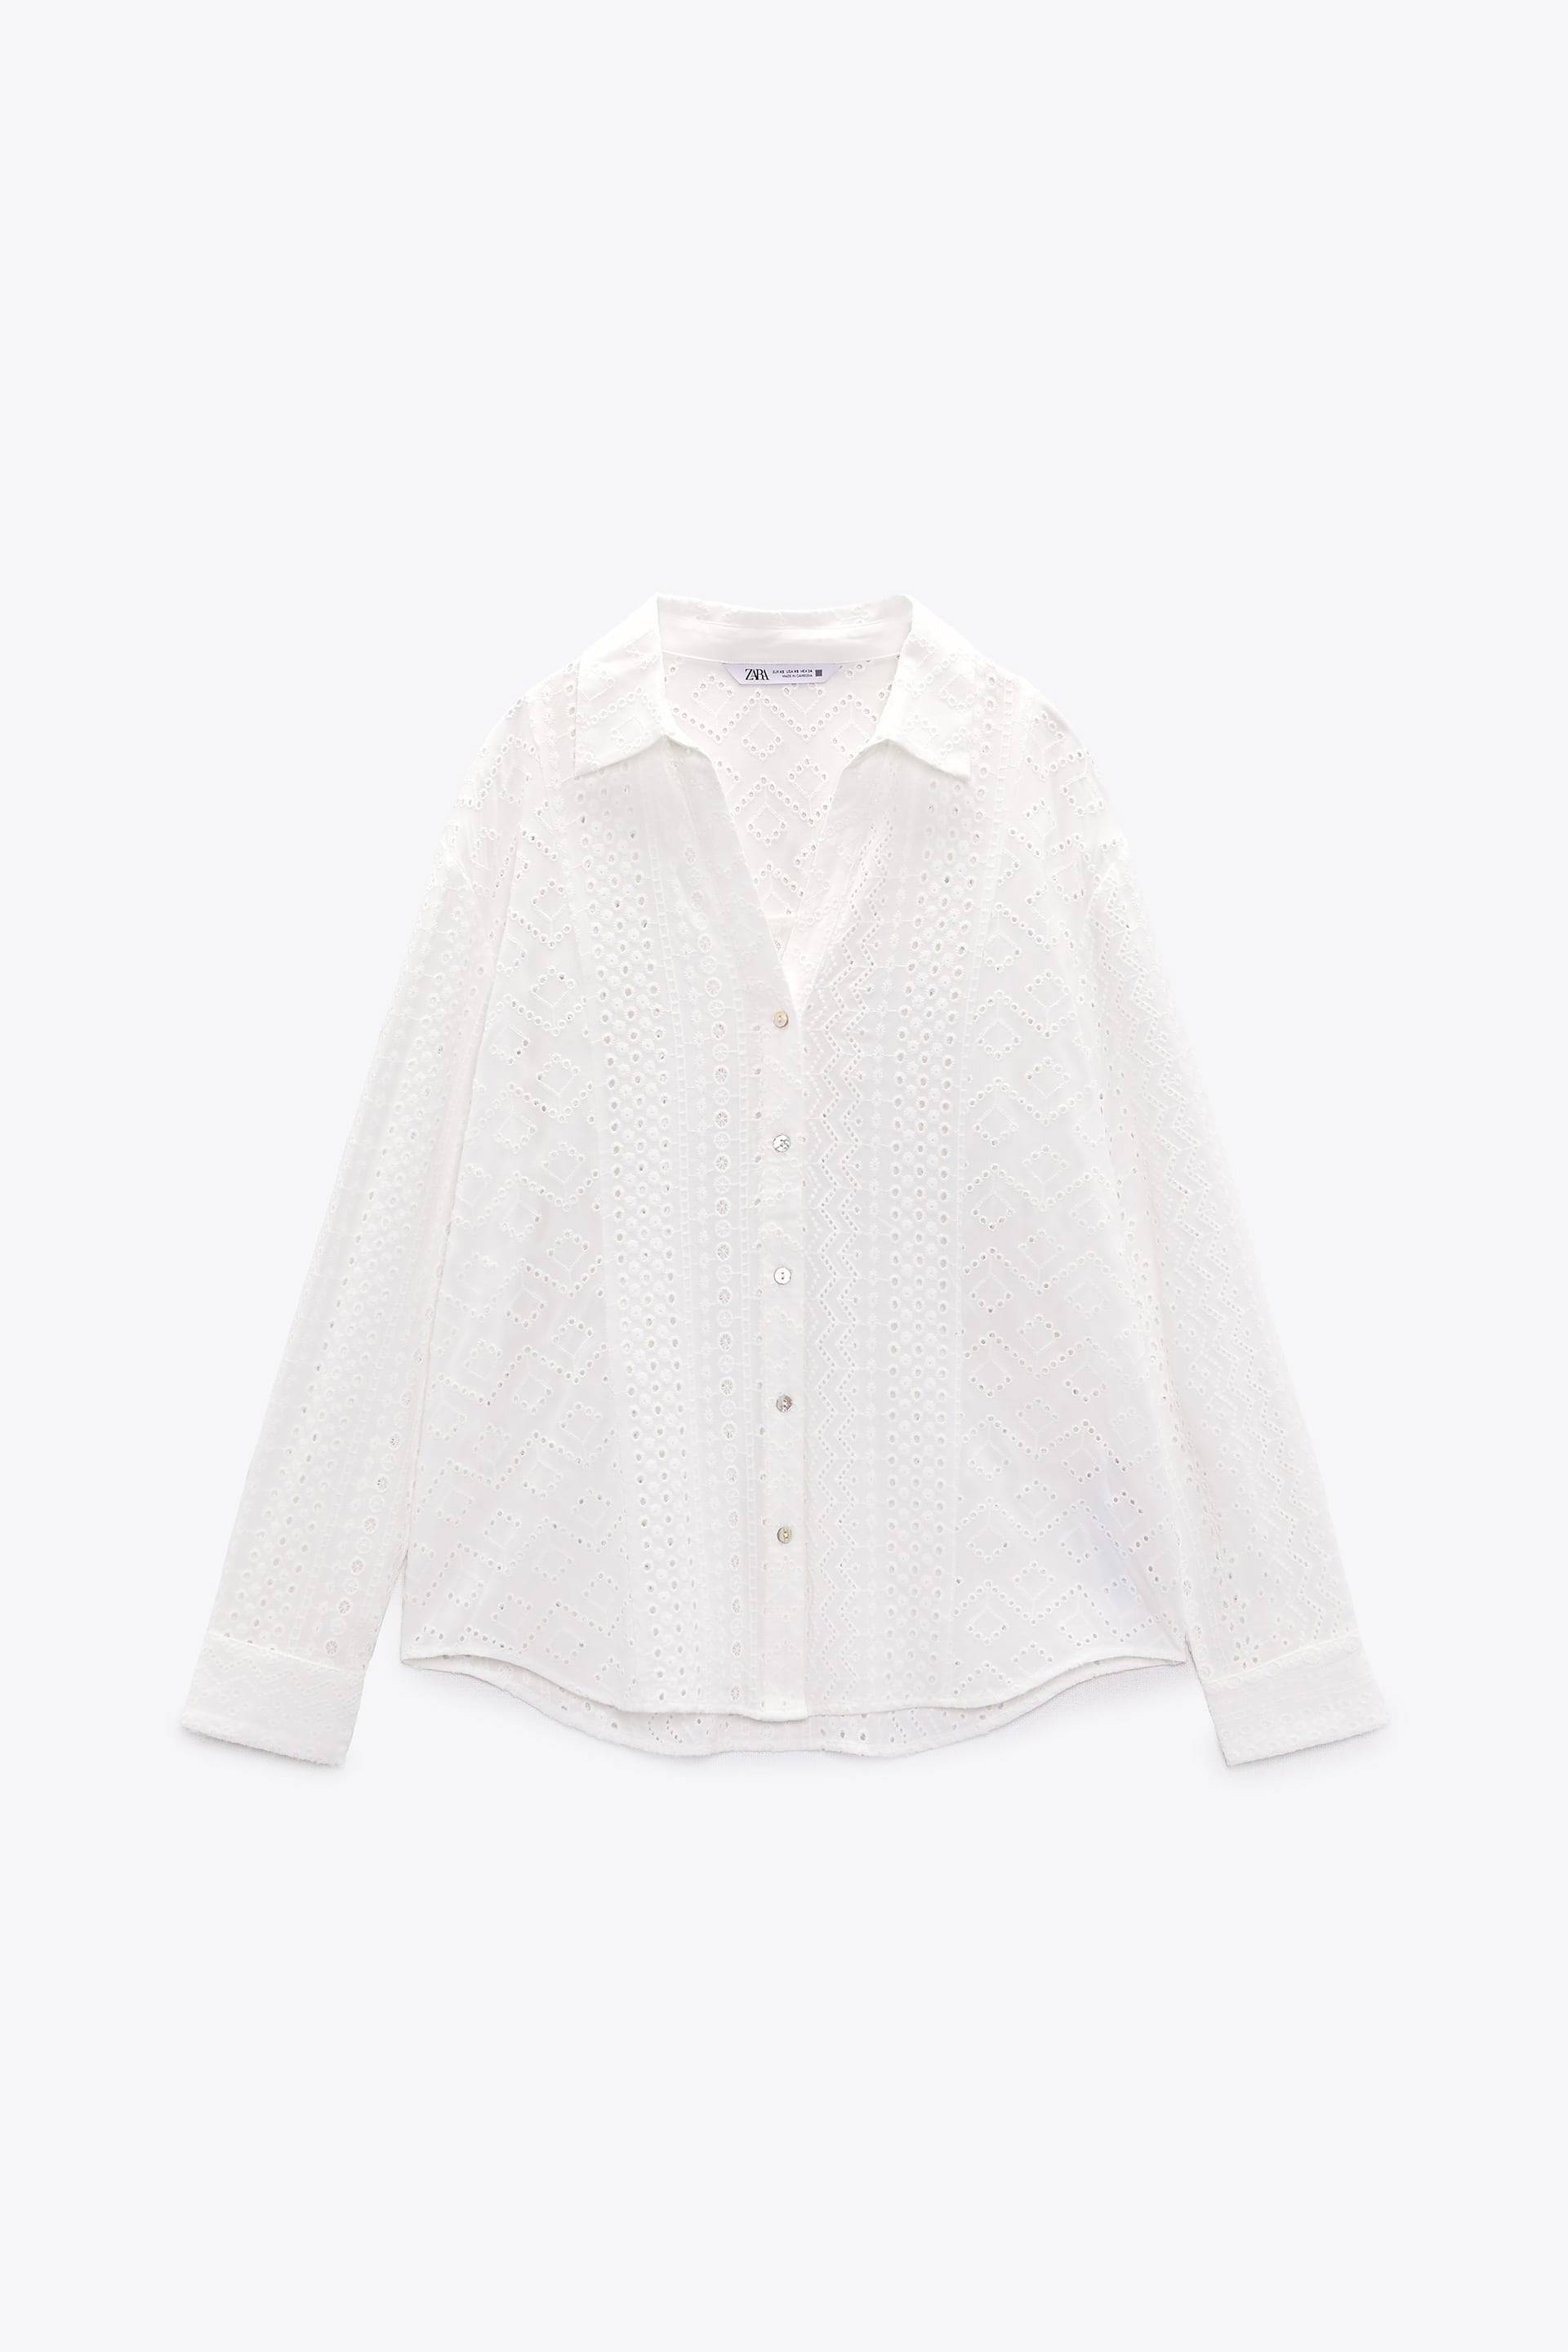 Blusa blanca con bordados perforados